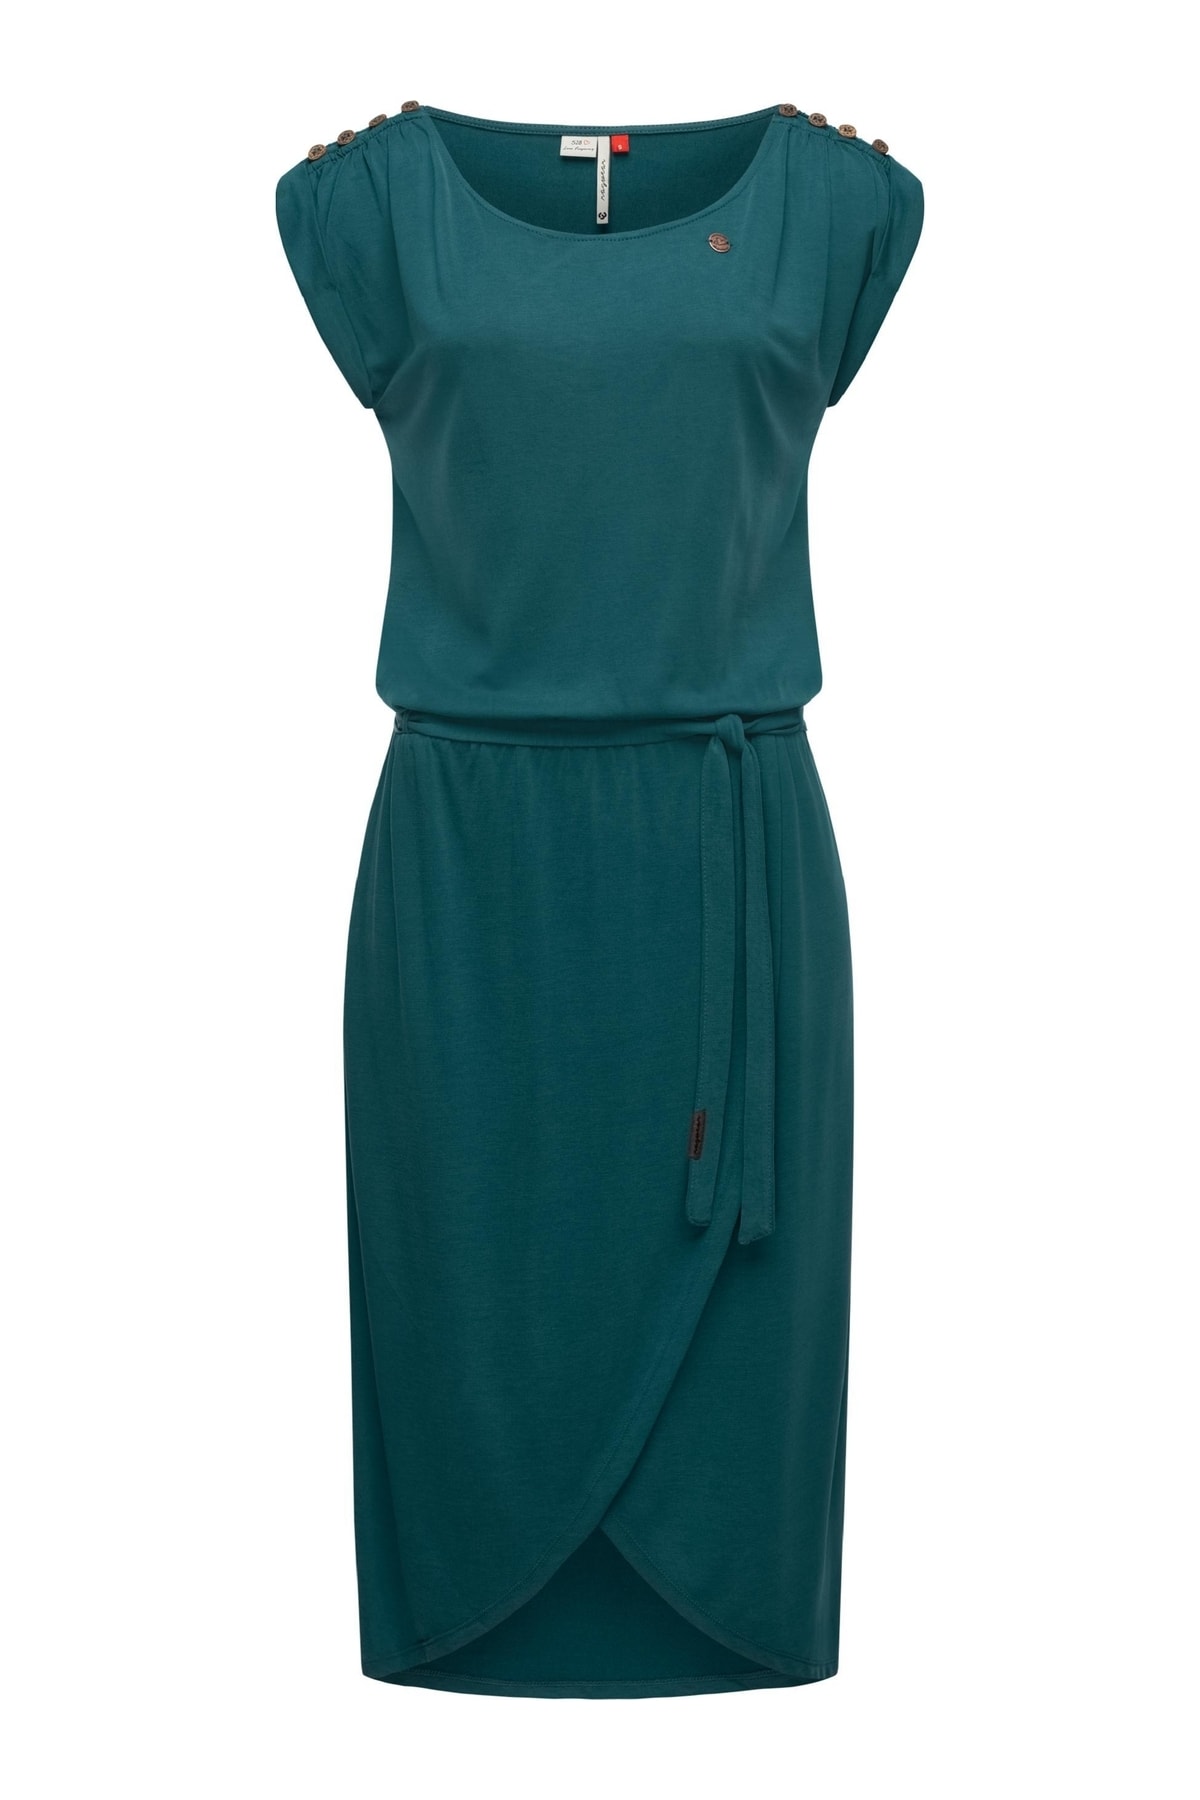 Ragwear Kleid Grün Jerseykleid